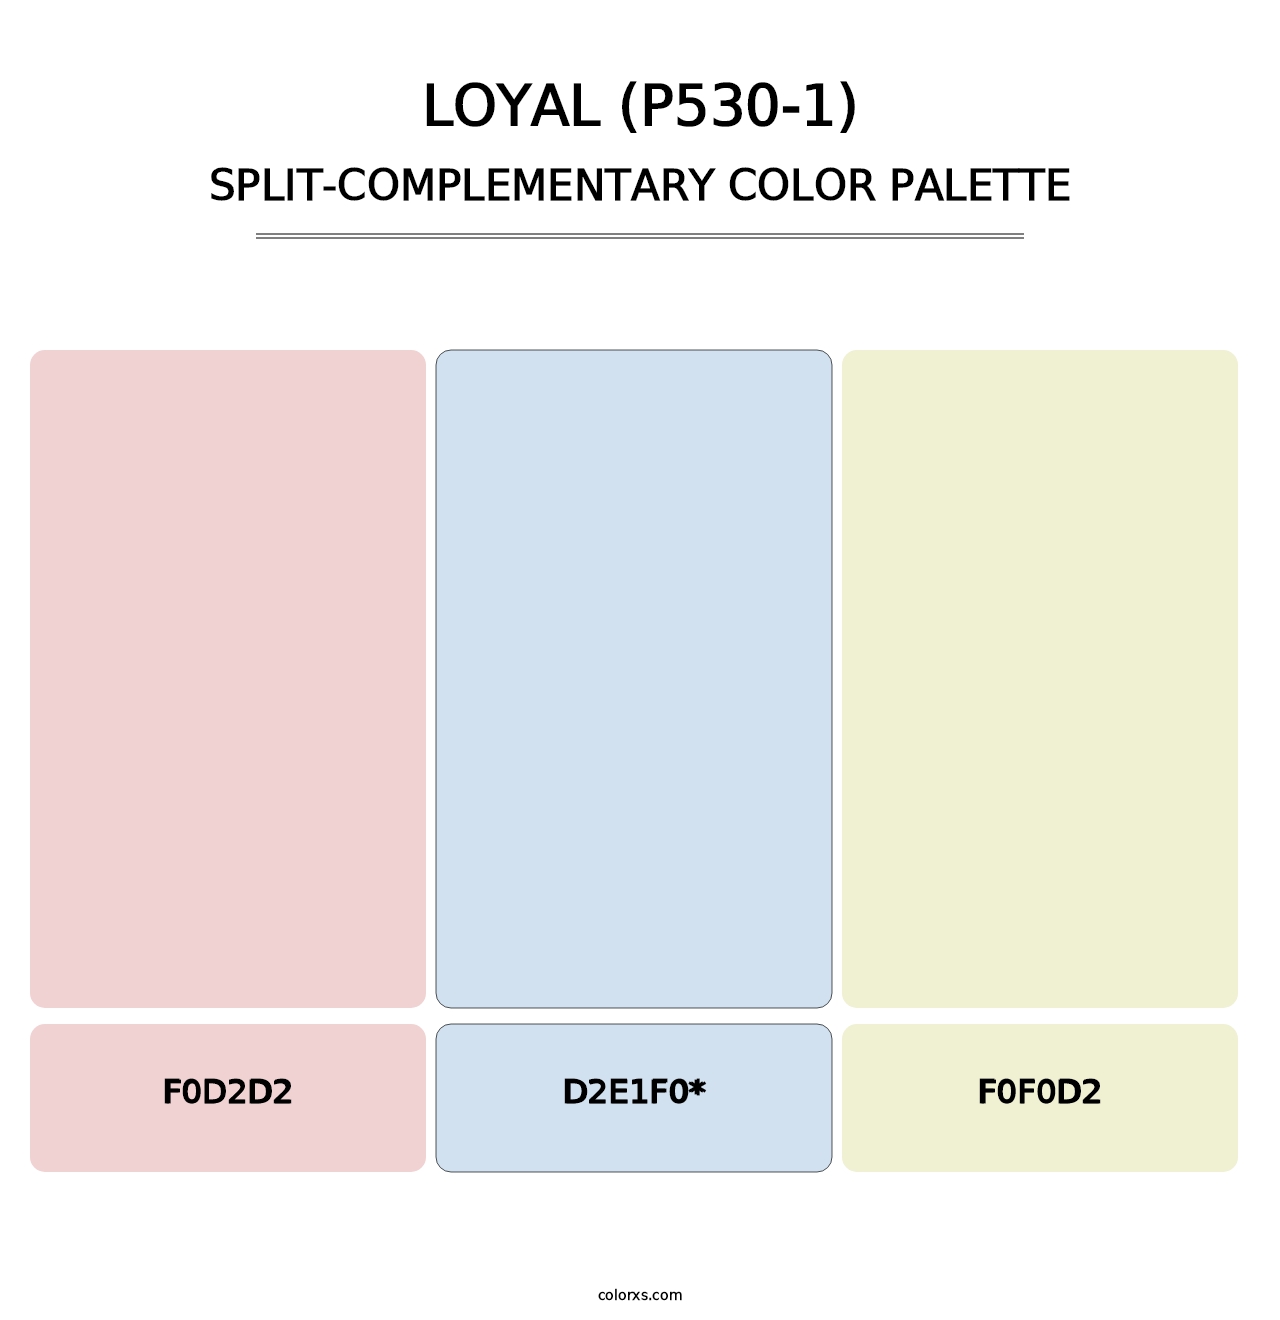 Loyal (P530-1) - Split-Complementary Color Palette